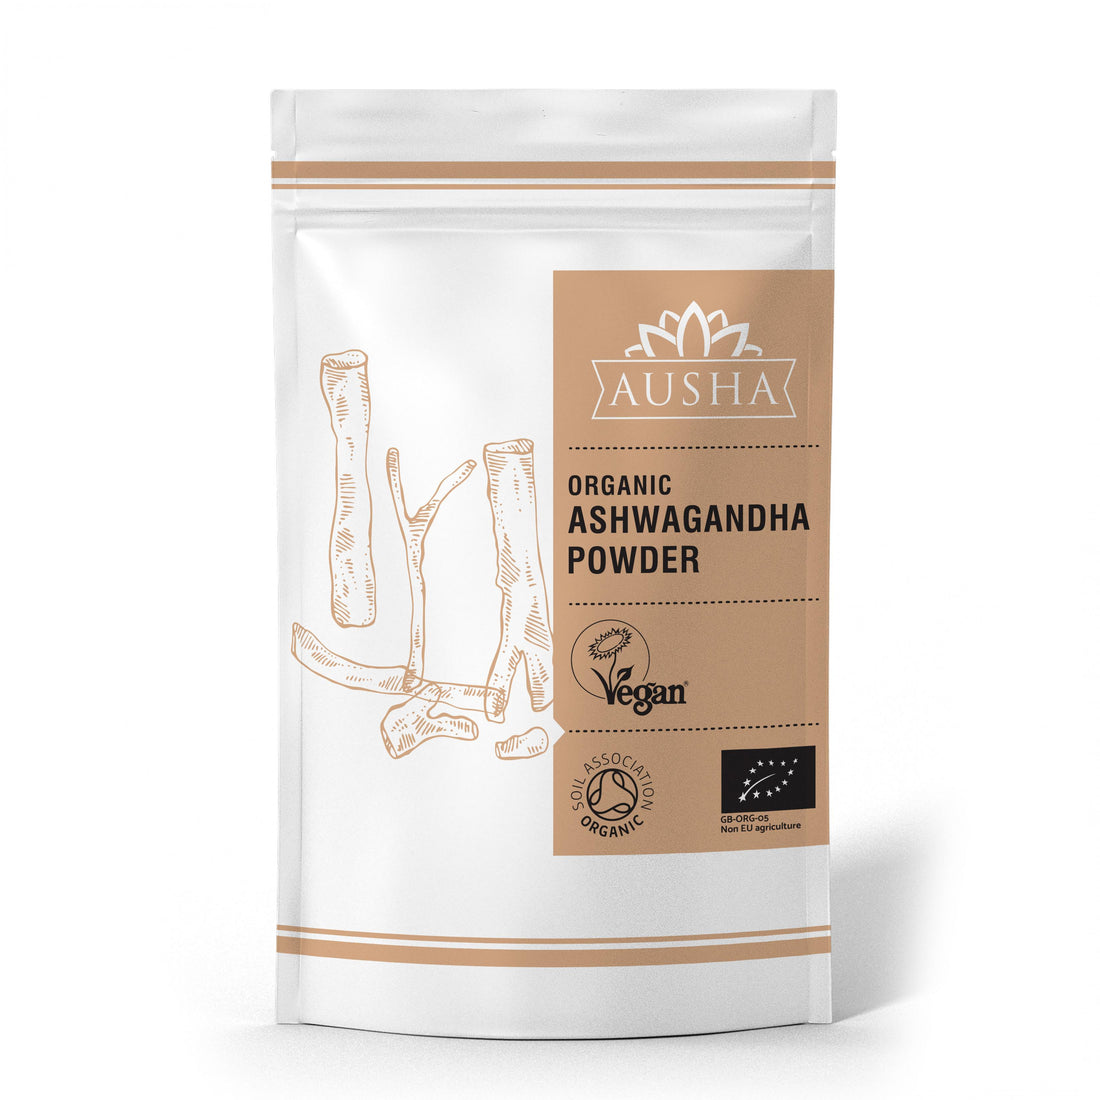 Ausha Organic Ashwagandha Powder